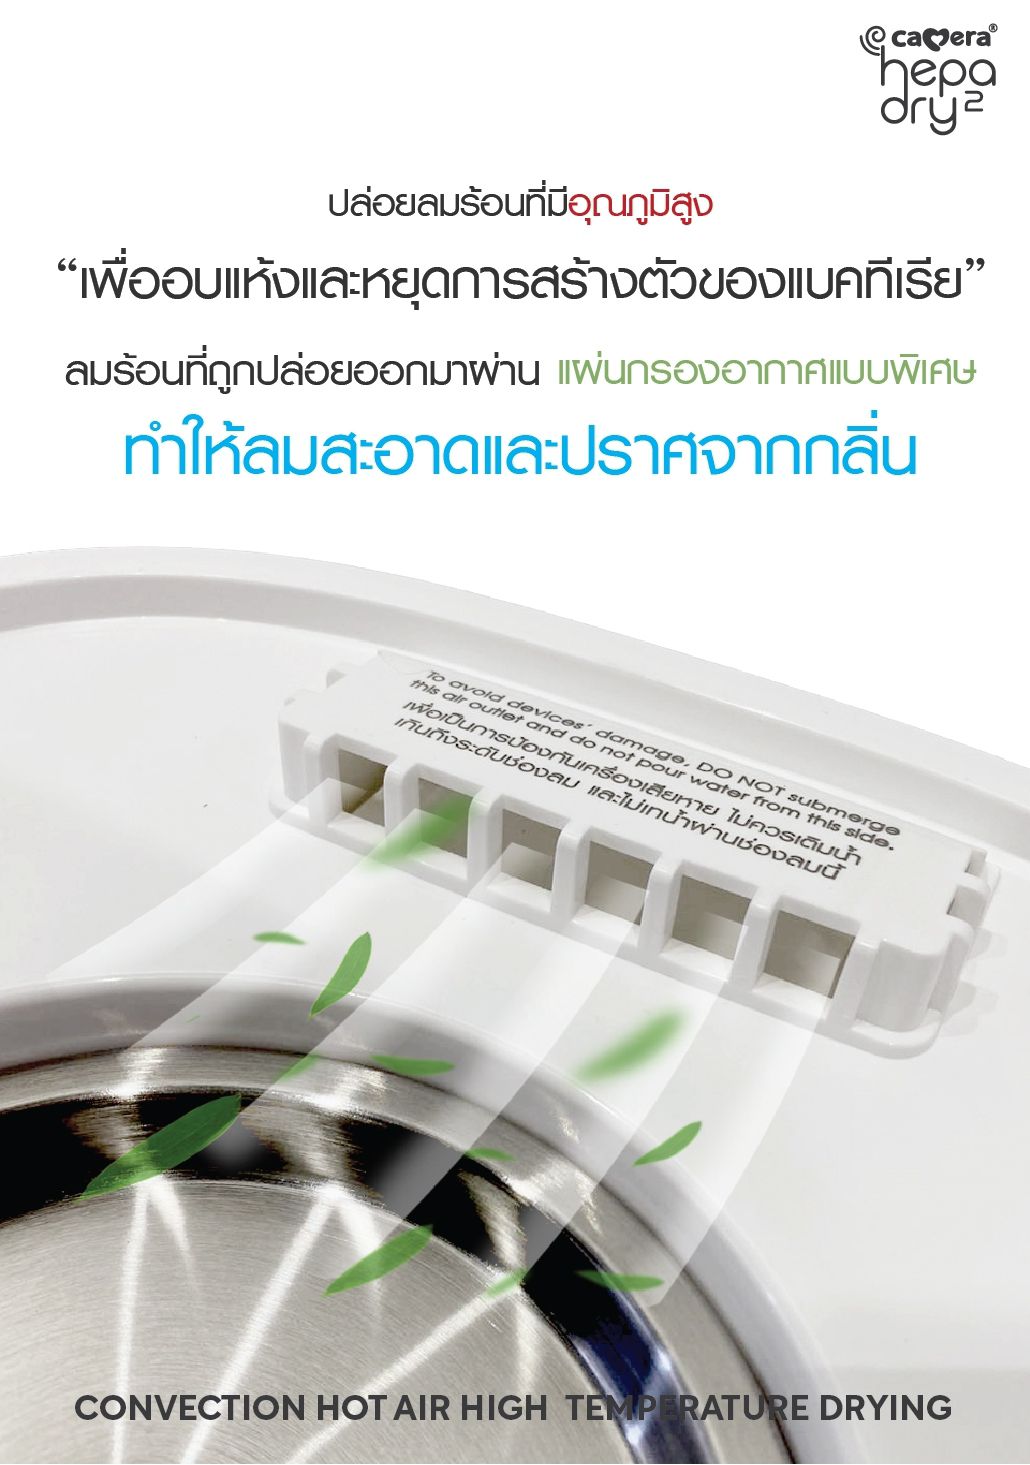 รุ่นใหม่ล่าสุด! CAMERA Hepa Dry2 เครื่องนึ่งขวดนม พร้อมอบแห้ง สูงสุด 9 ขวด หน้าจอทัชสกรีนขนาดใหญ่ ภาษาไทย ใช้งานง่าย ประกันศูนย์ไทย 3 ปี